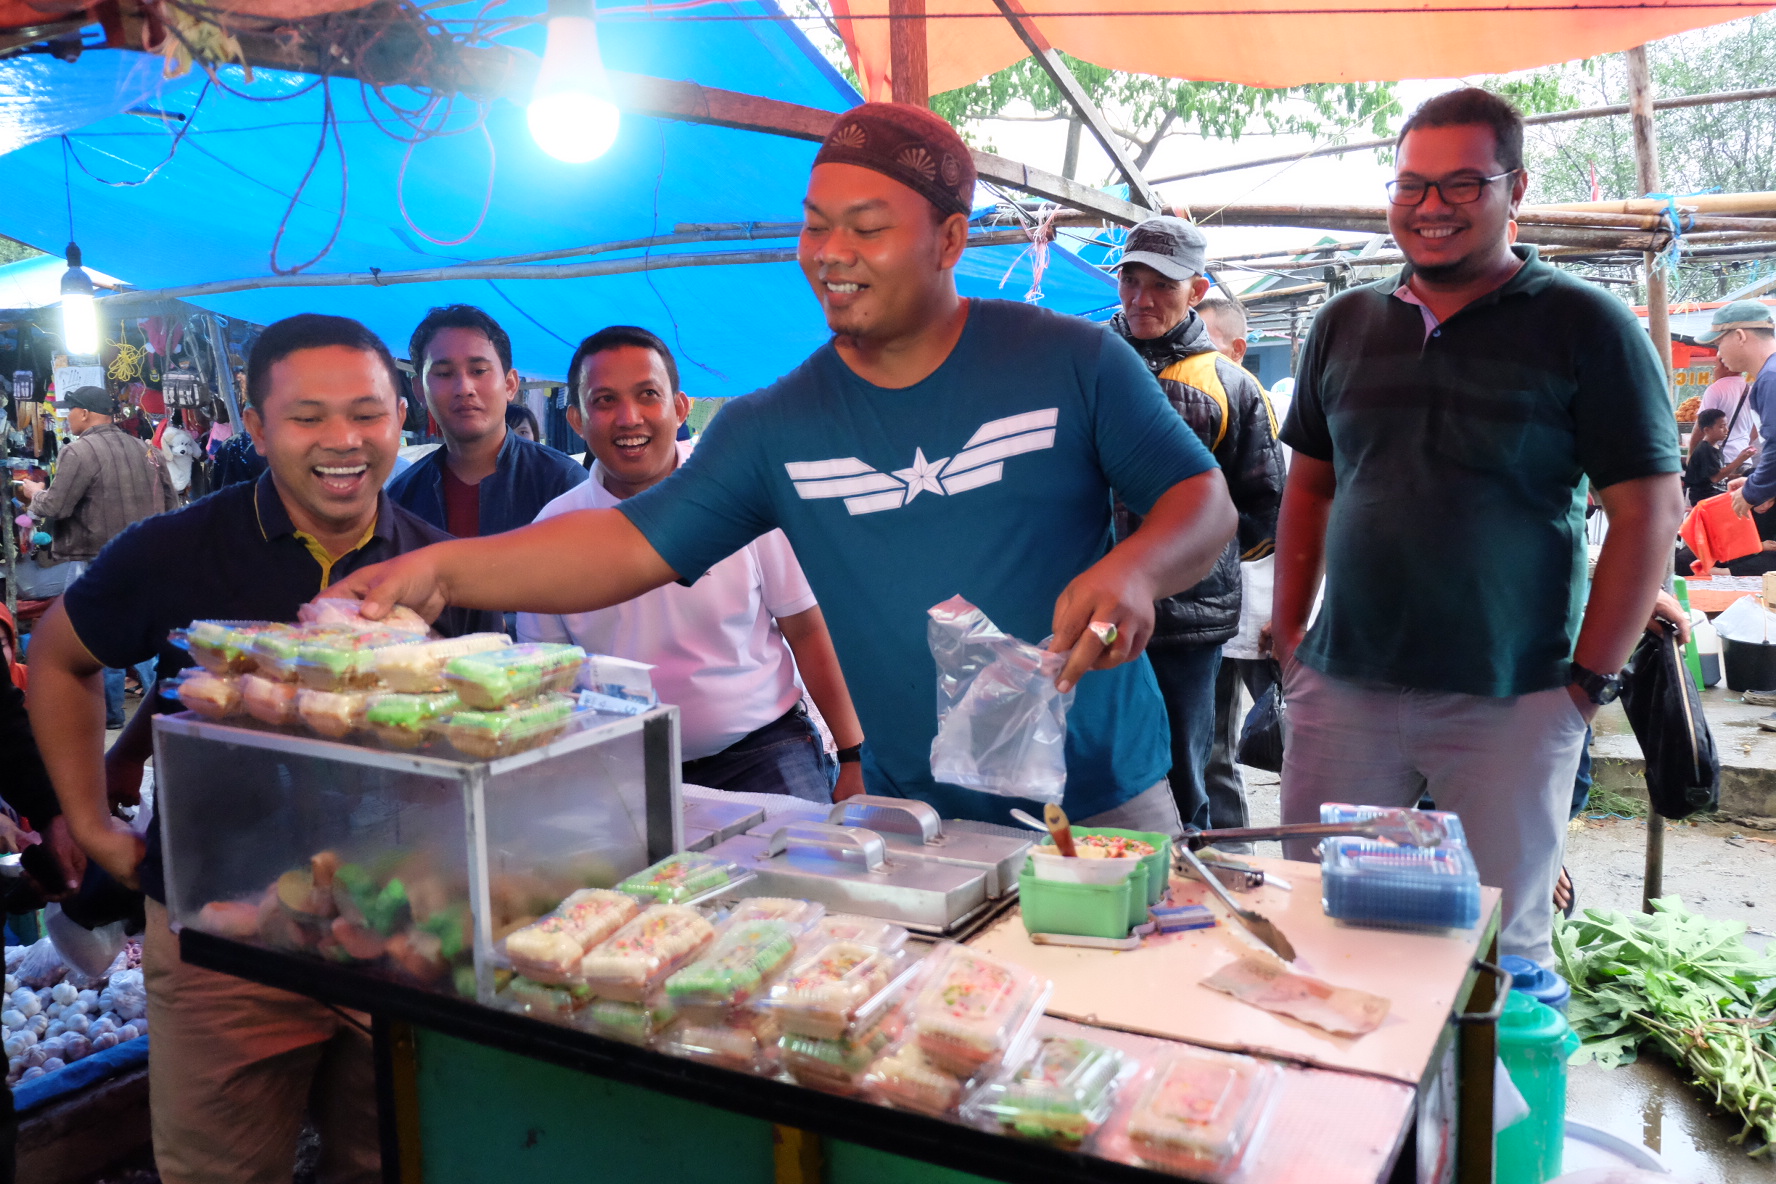 Cabup Inhil Abdul Wahid Belusukan ke Pasar, Pedagang: Ini Baru Mantap Muda dan Energik